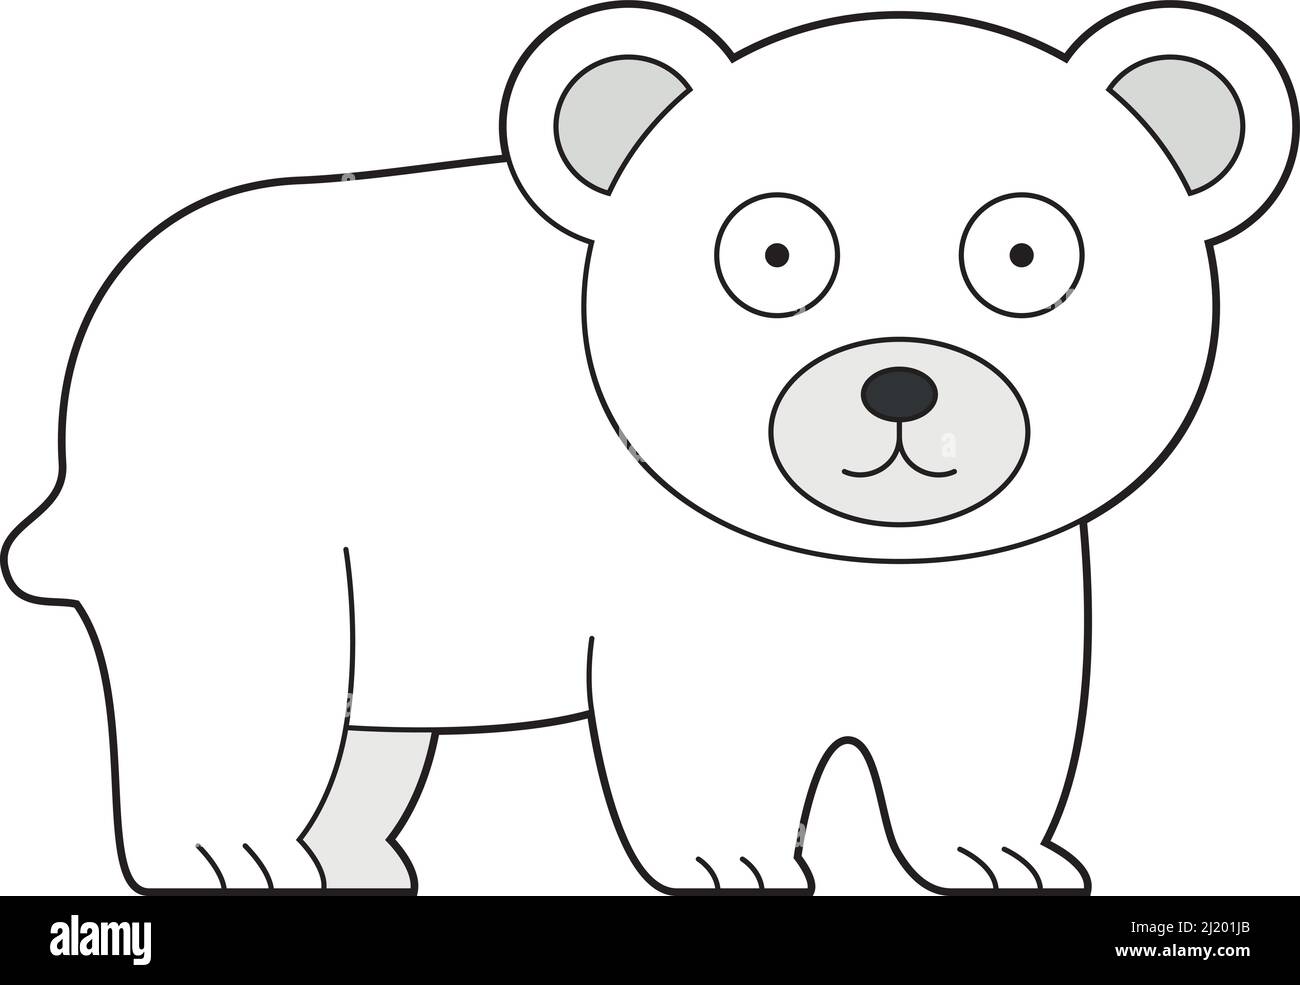 Cute cartoon vector illustration of a polar bear Stock Vector Image & Art -  Alamy